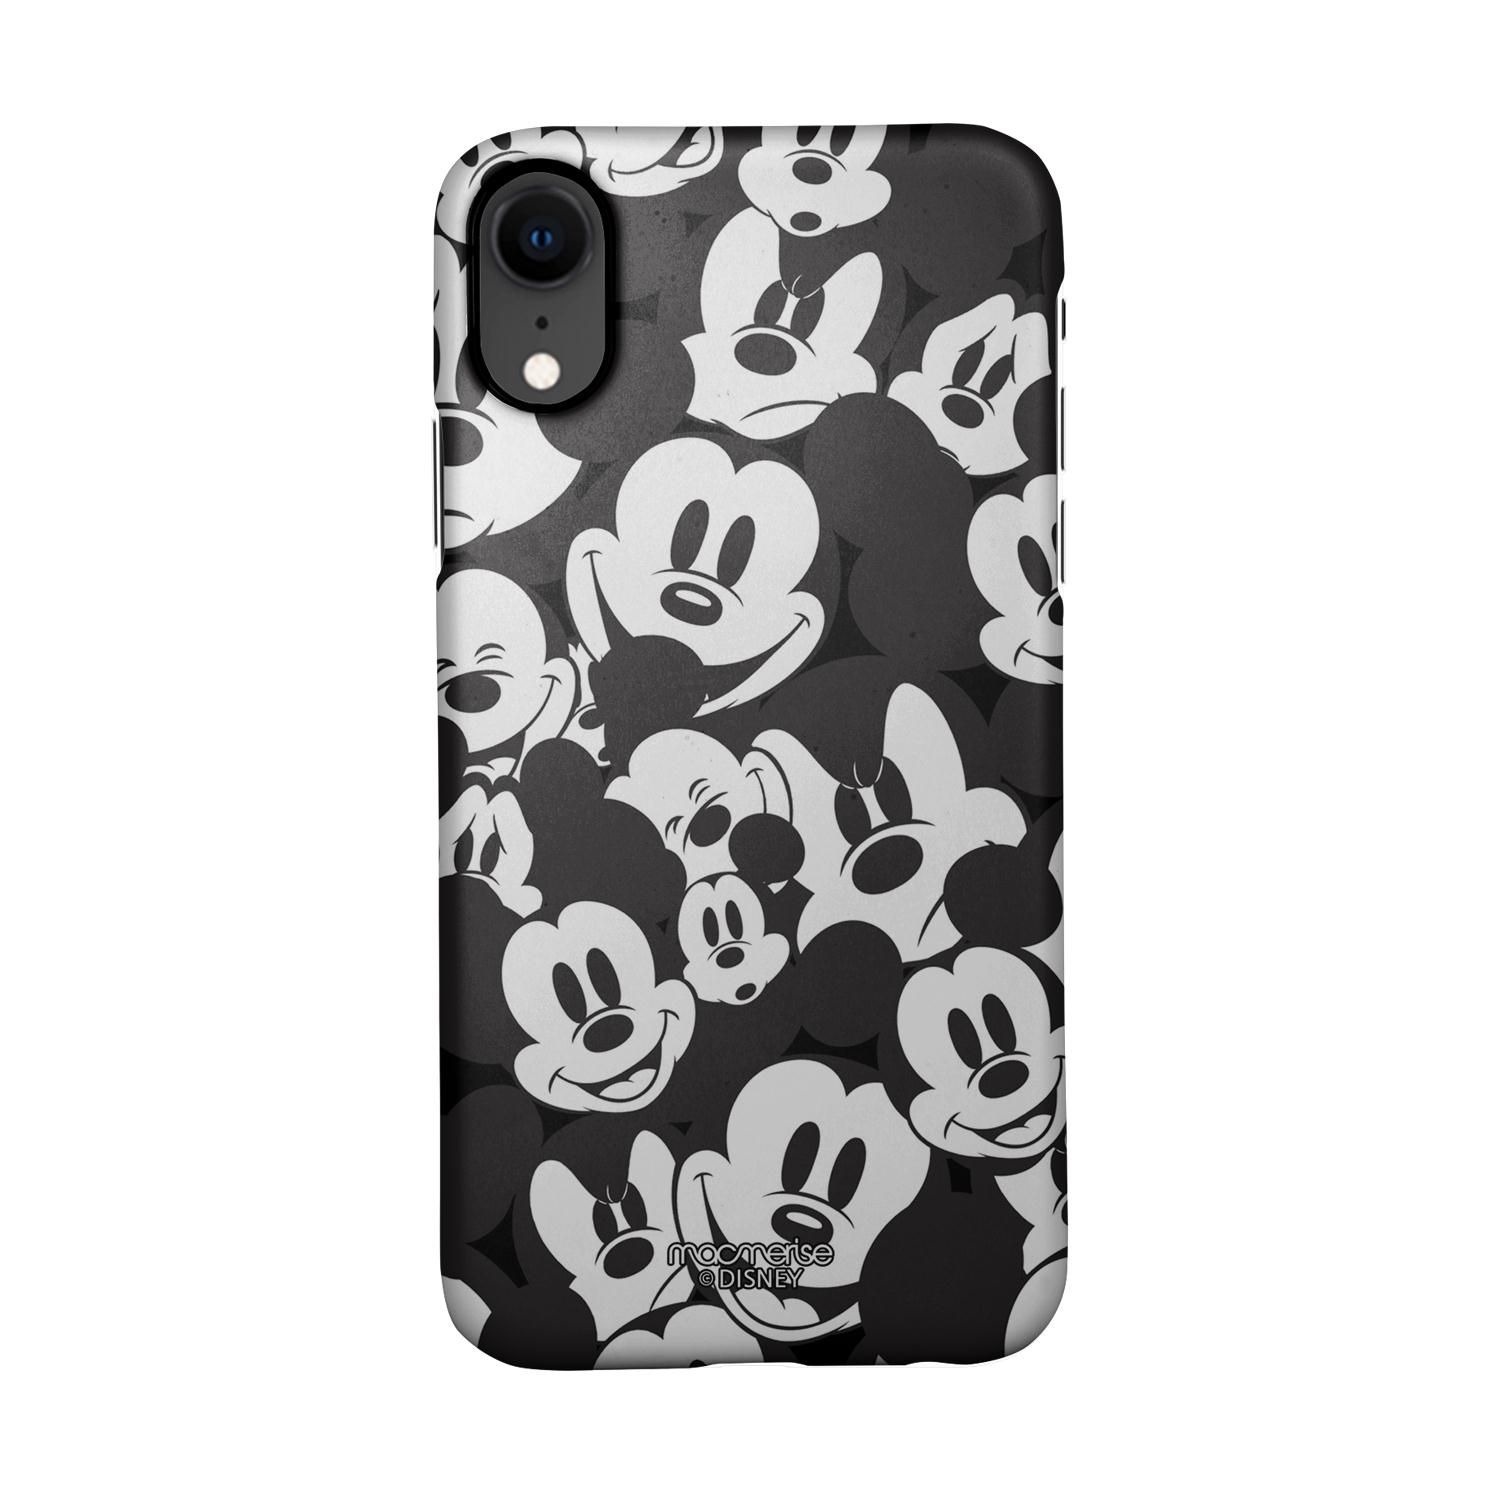 Buy Mickey Smileys - Sleek Phone Case for iPhone XR Online